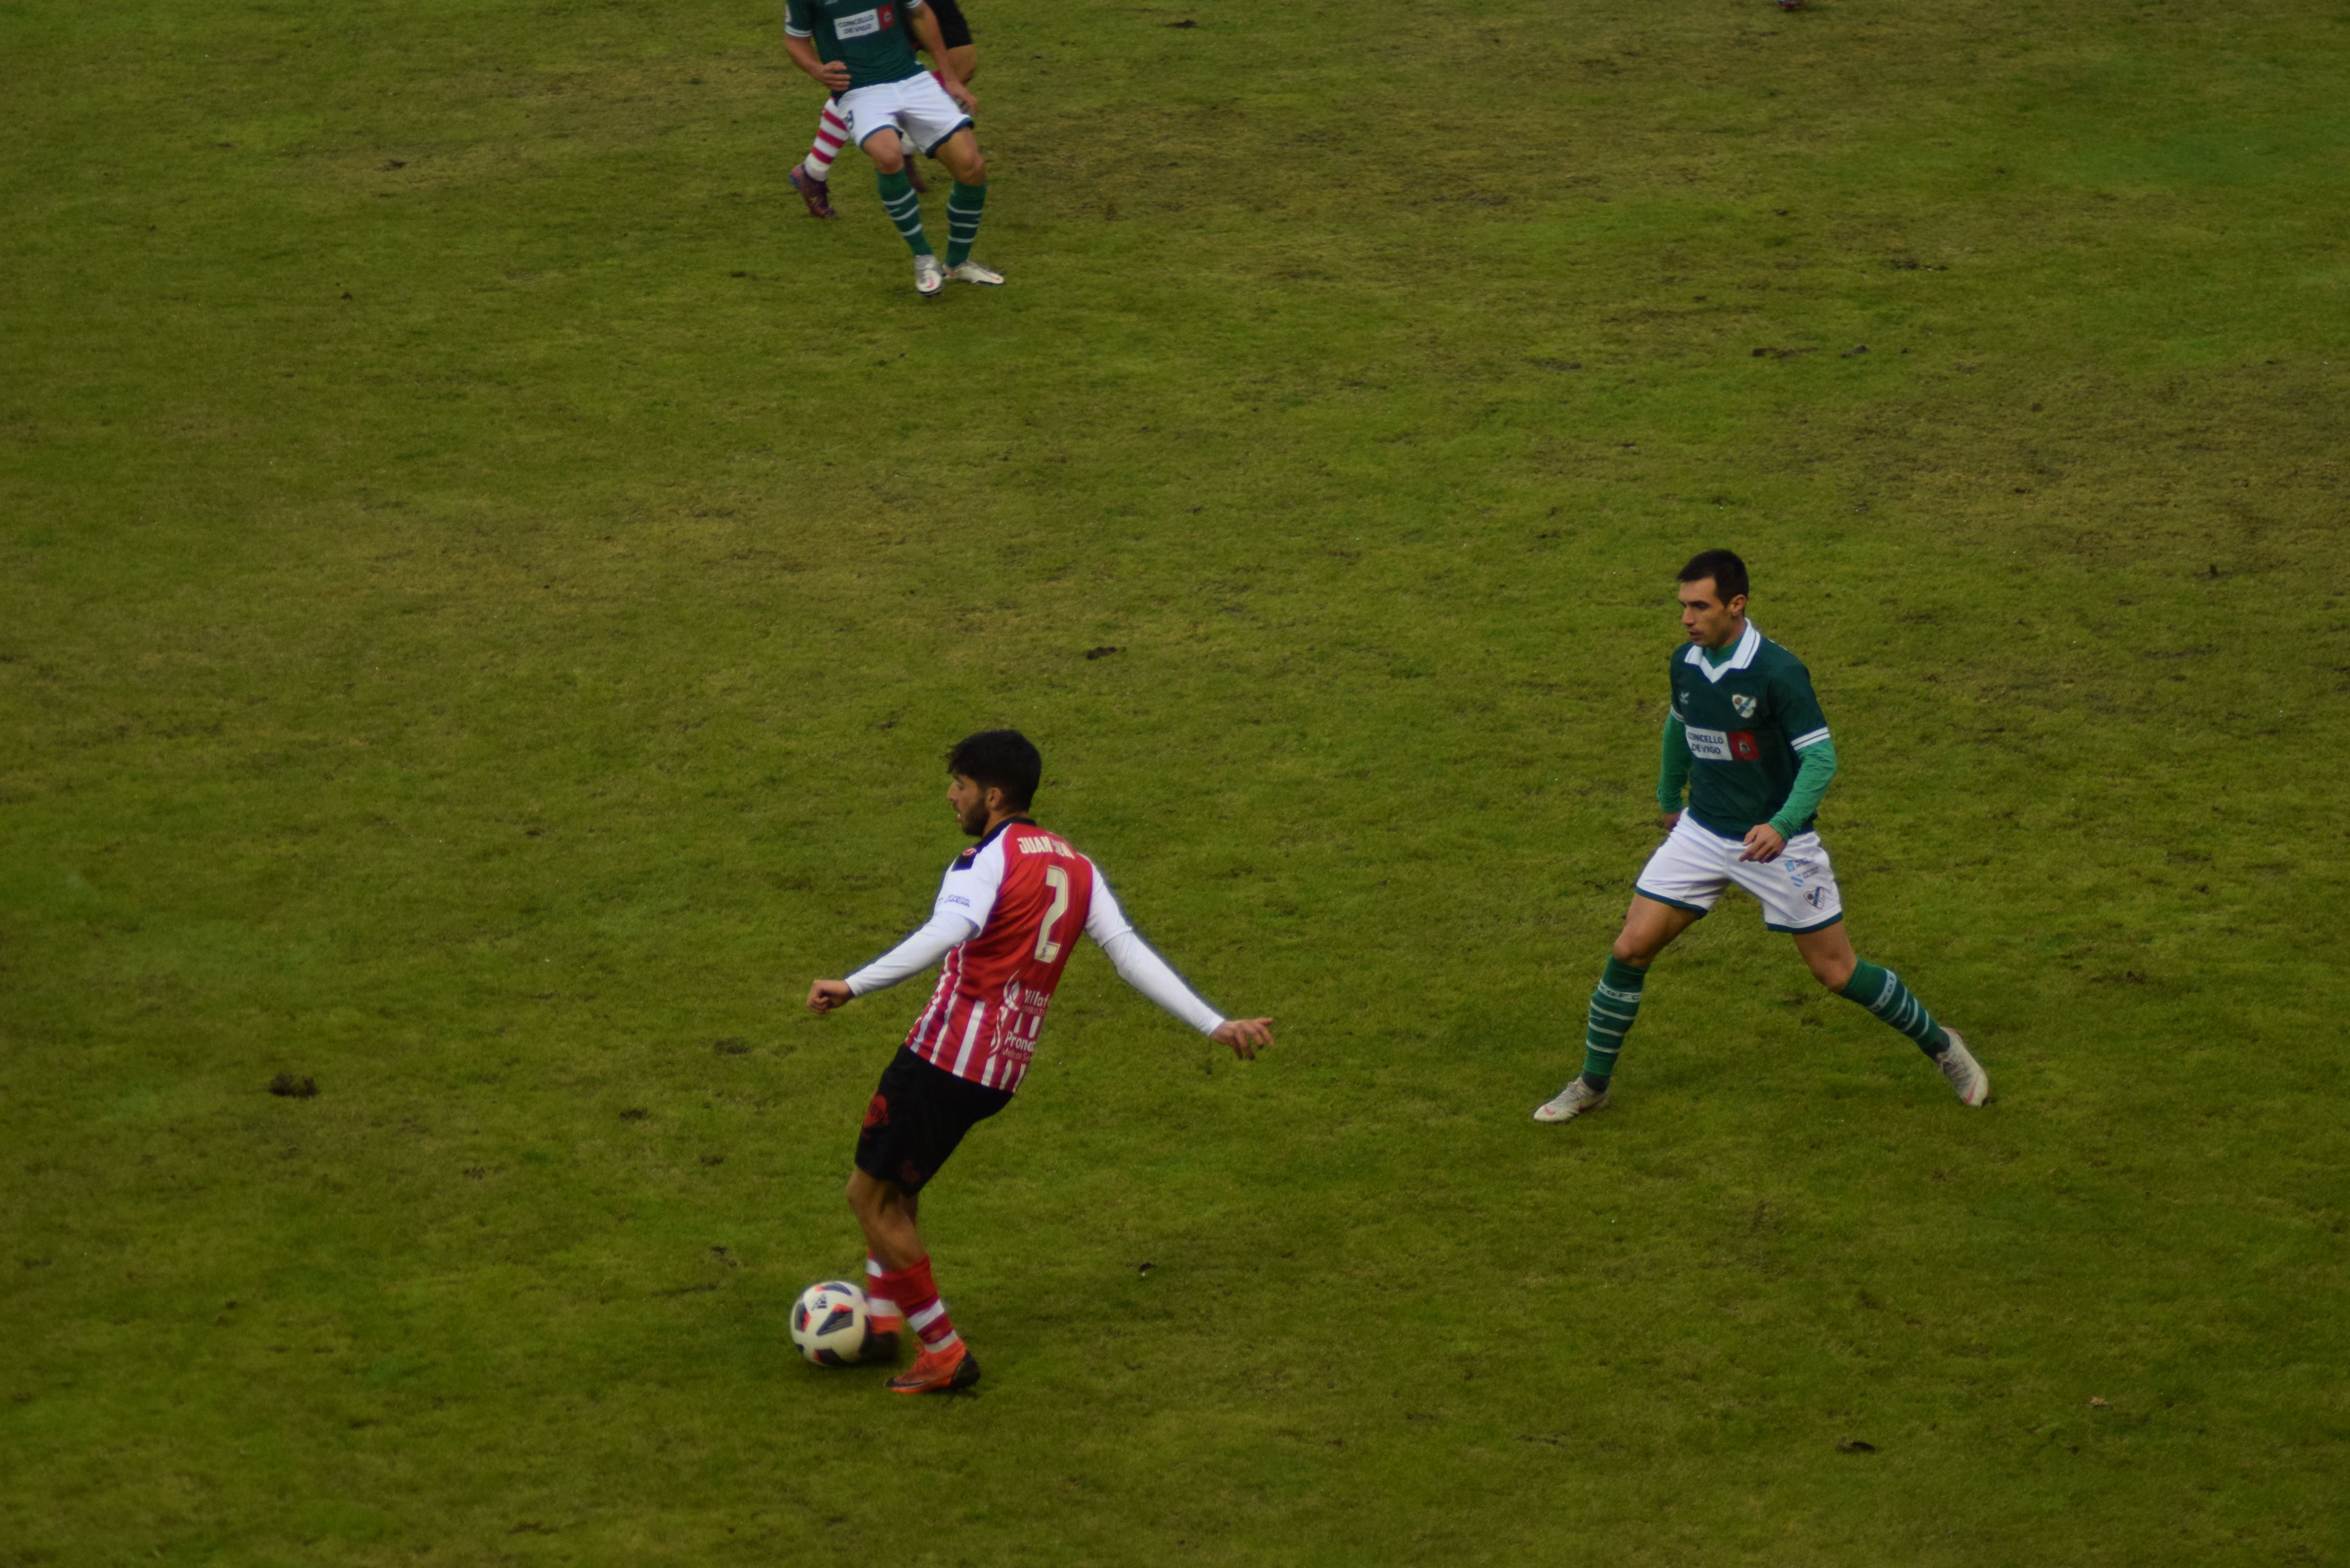 Zamora CF   Coruxo  (8)